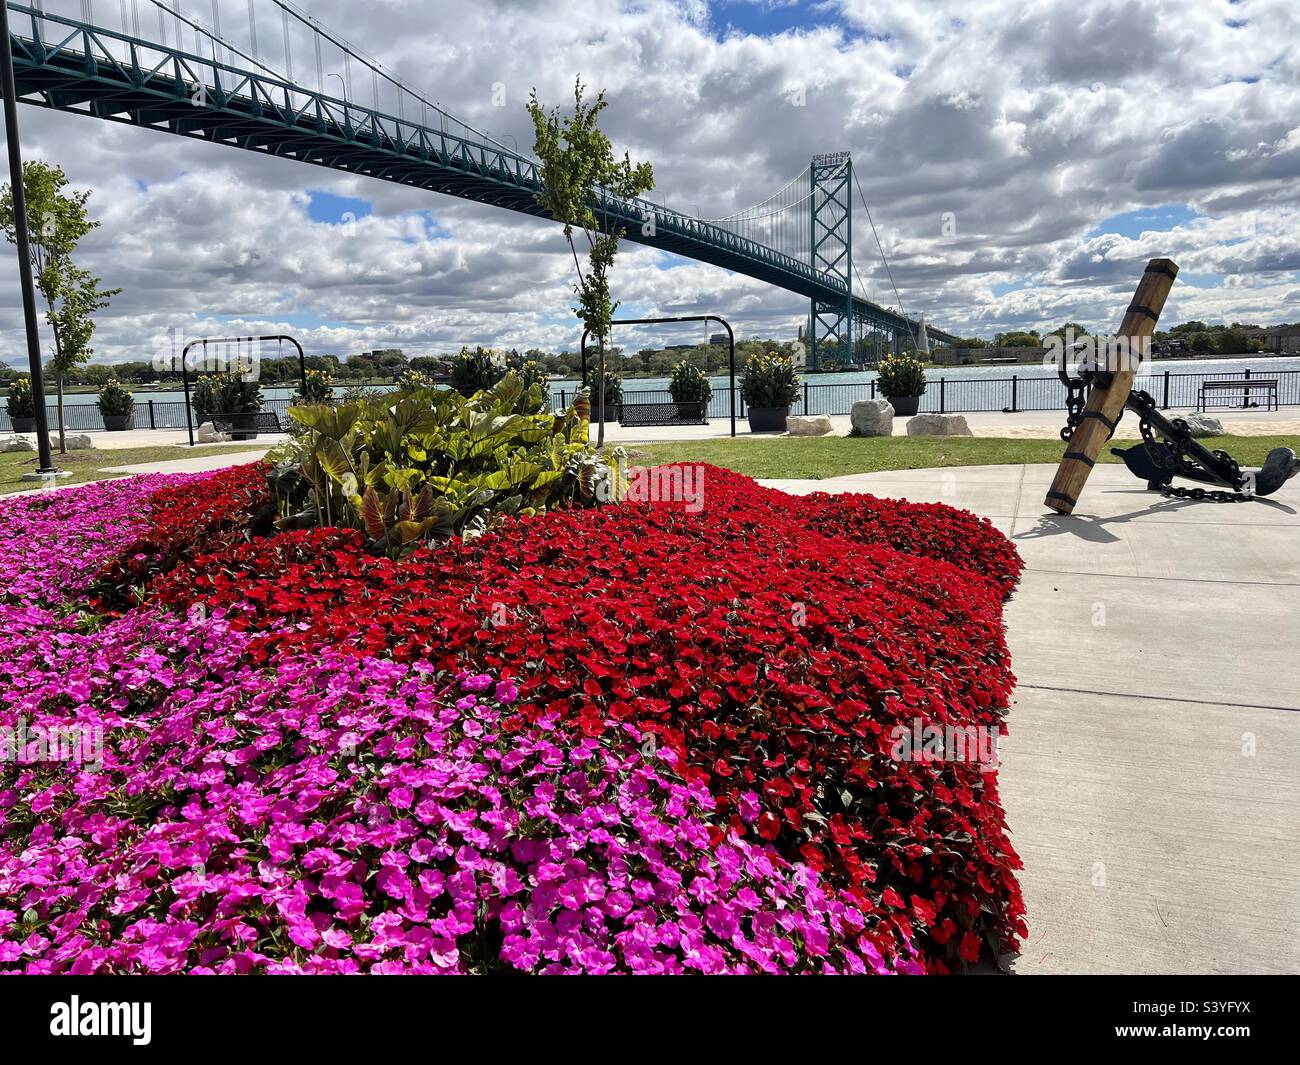 El puente Ambassador sobre los hermosos jardines florecidos de Riverside Park, Detroit, Michigan. El rosa y rojo Petunias, Touch-me-nots, y la impaciencia floreciendo es una vista hermosa para ver. Foto de stock